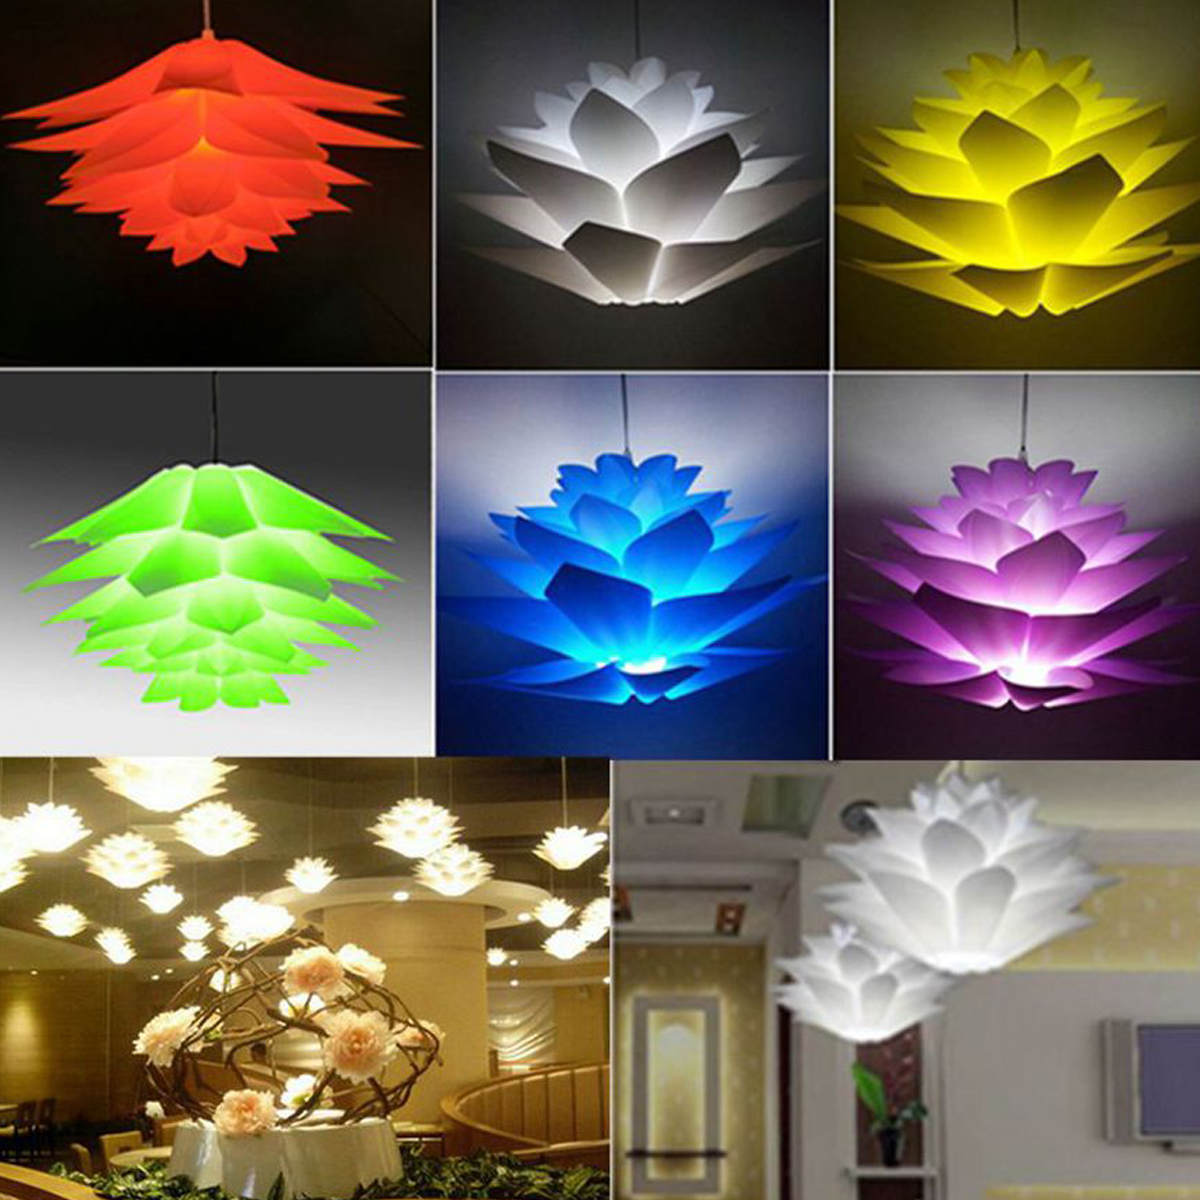 7-Colors-DIY-Lotus-Chandelier-Shape-Ceiling-Pendant-Light-Lampshade-Home-Decor-1720633-4